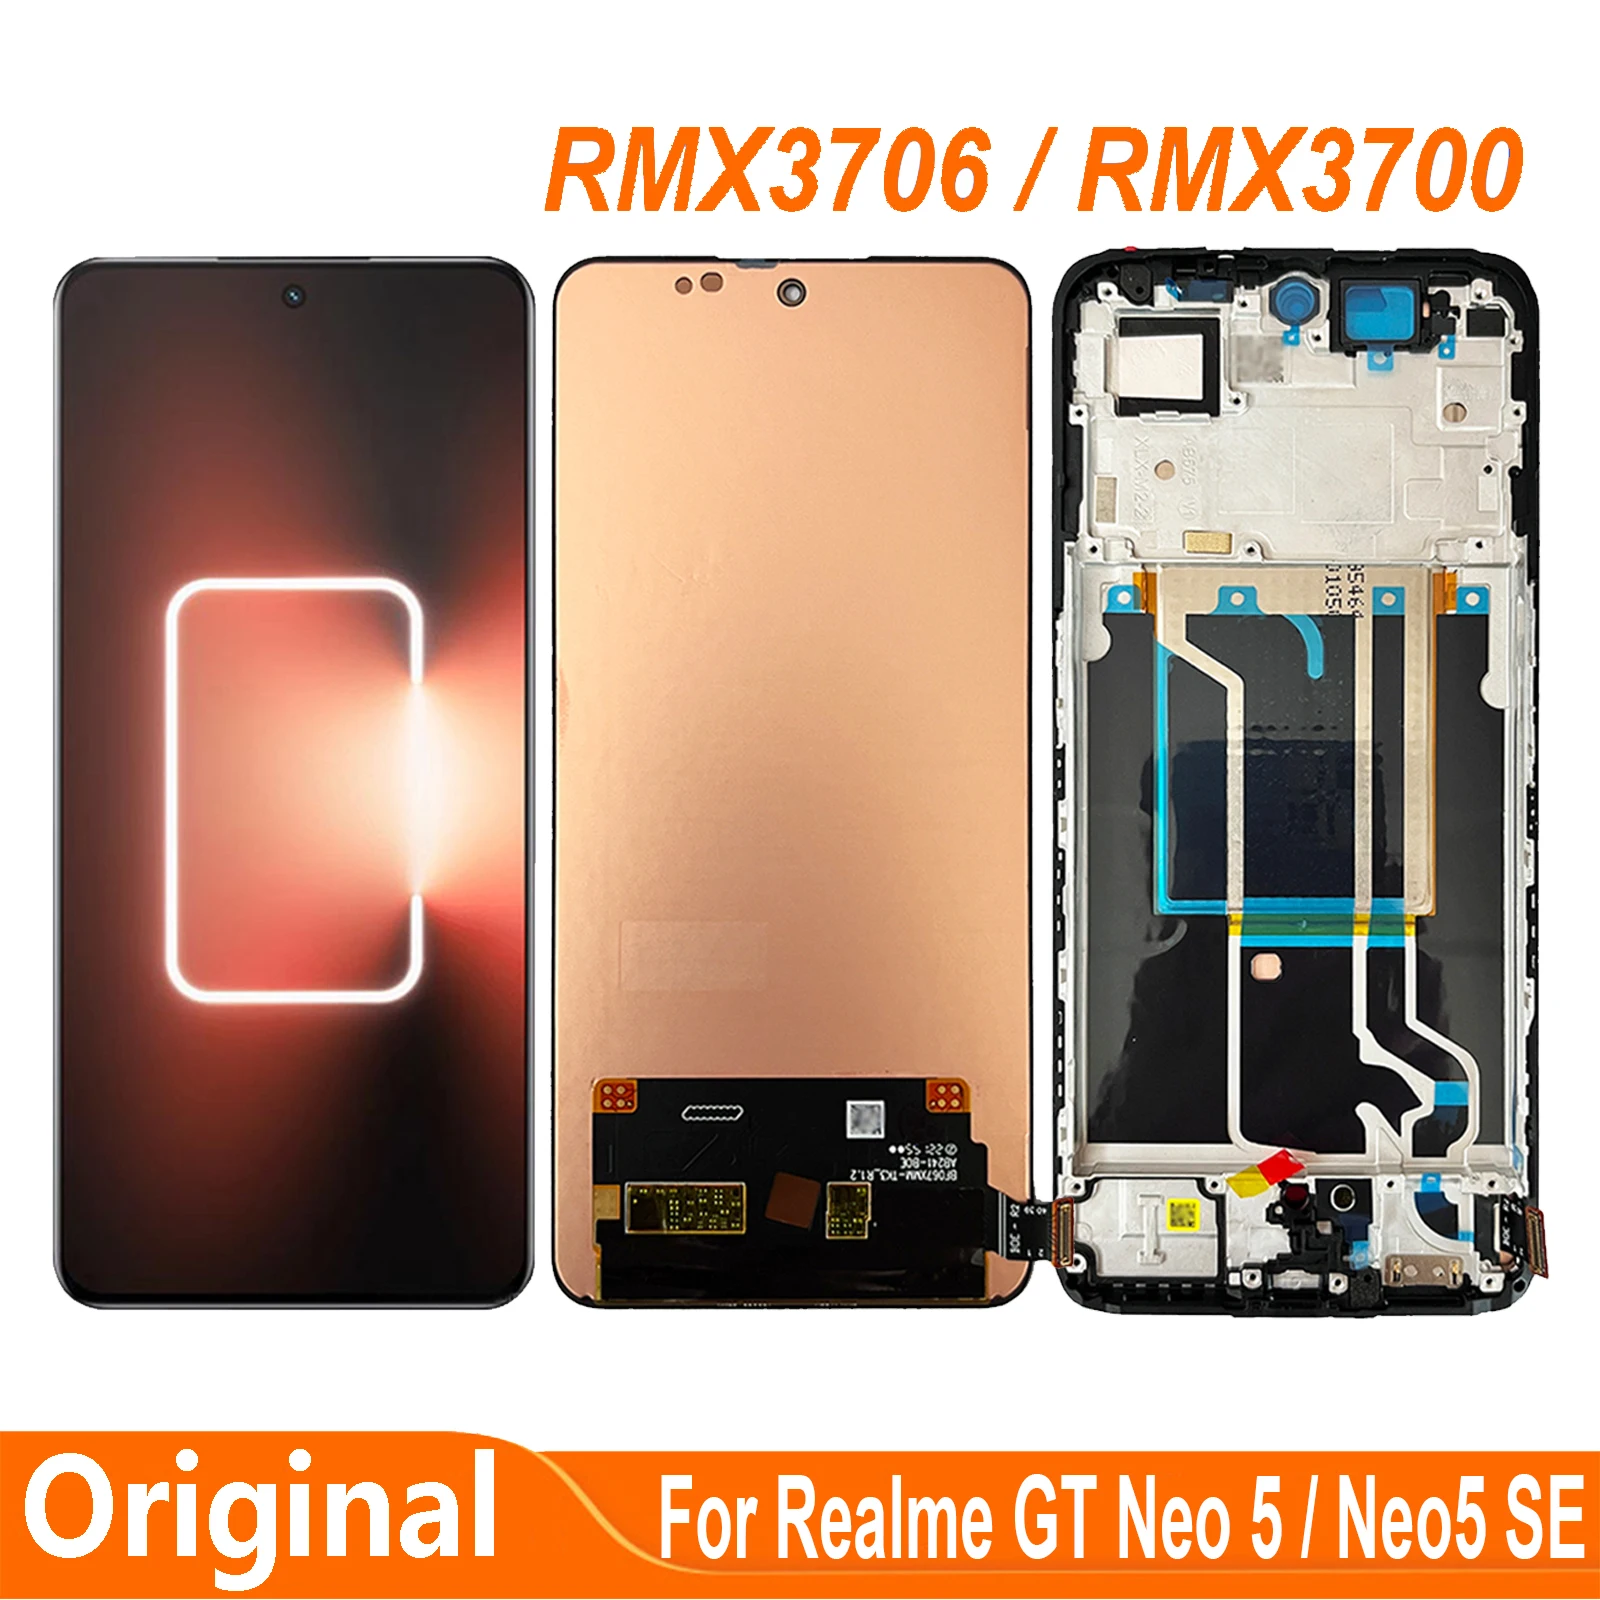 realme-gtネオ5neo-5-sermx3700rmx3706用のlcdタッチスクリーンパネル